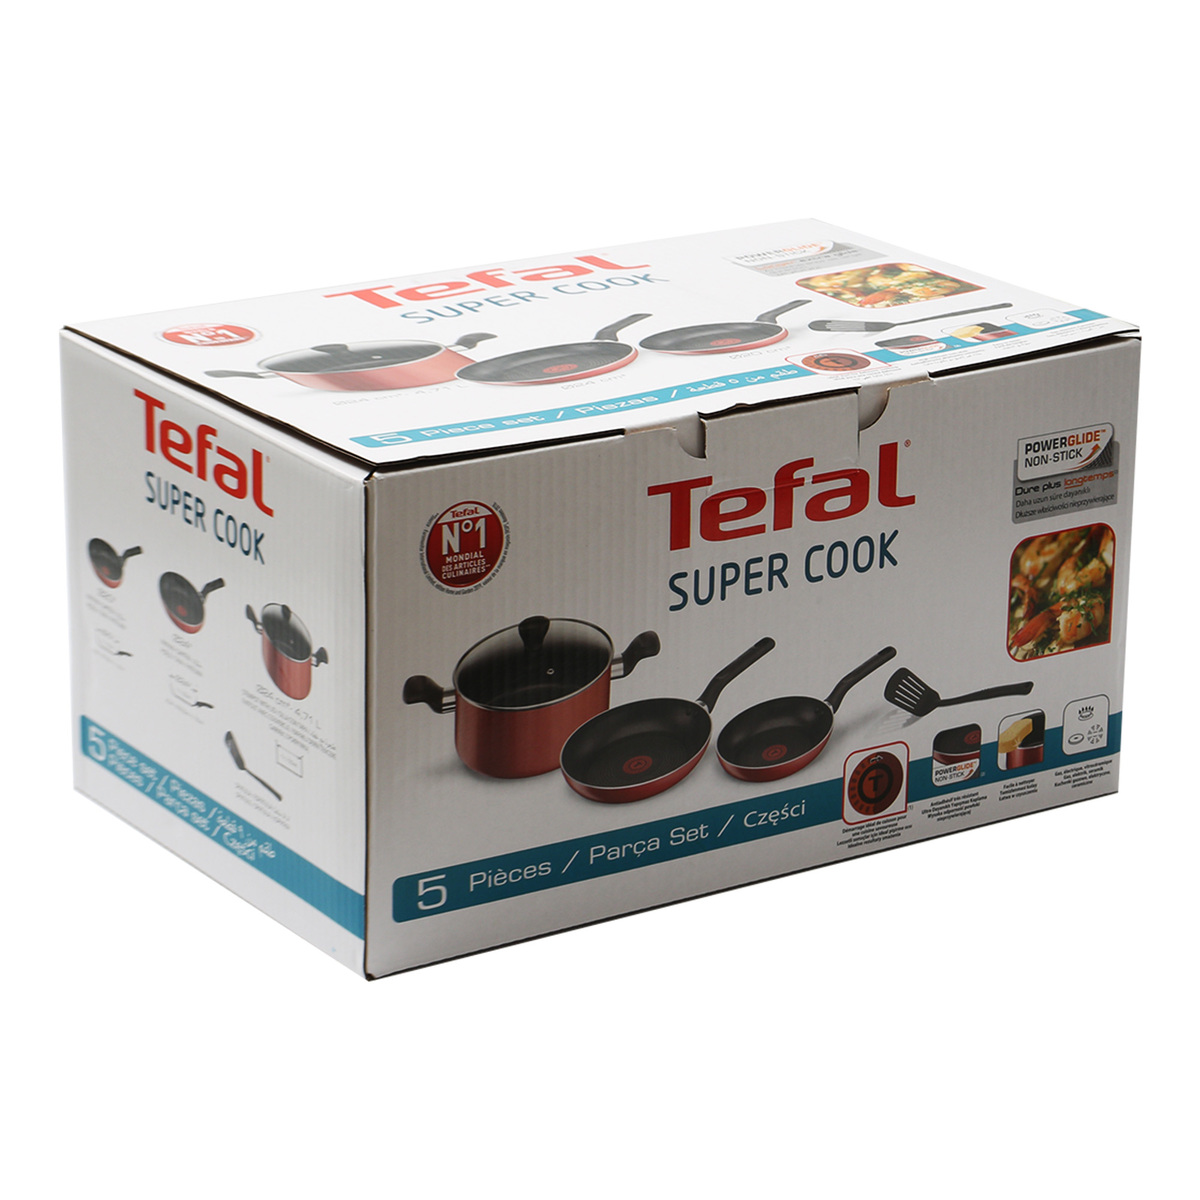 Tefal Cookware 5pcs Super Cook B243S585